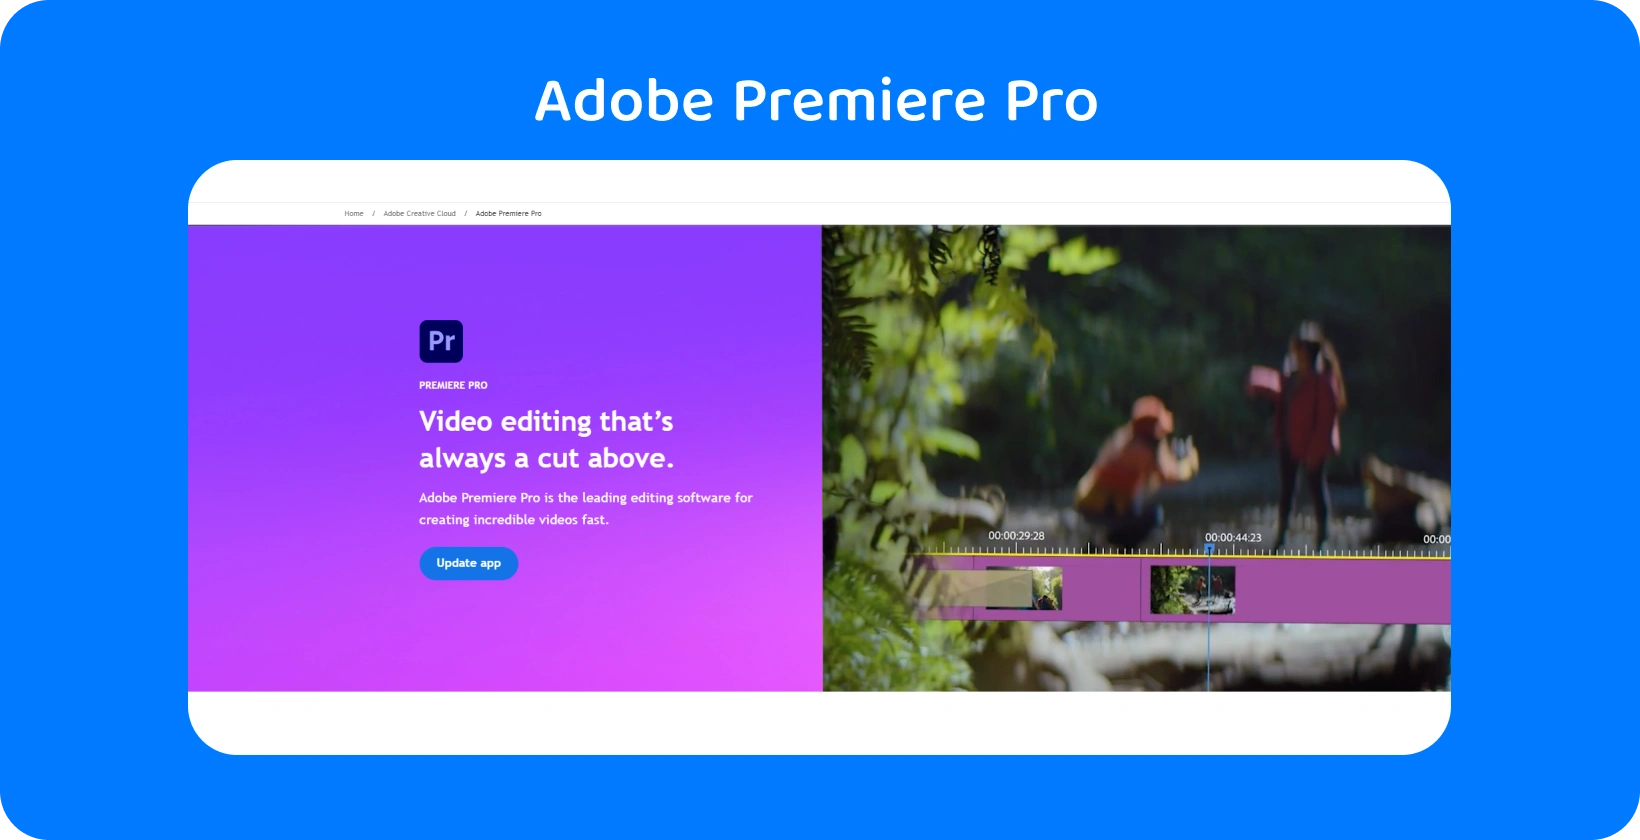 Hızlı, hassas düzenlemeler için ideal olan gelişmiş video düzenleme yeteneklerini gösteren Adobe Premiere Pro arayüz.